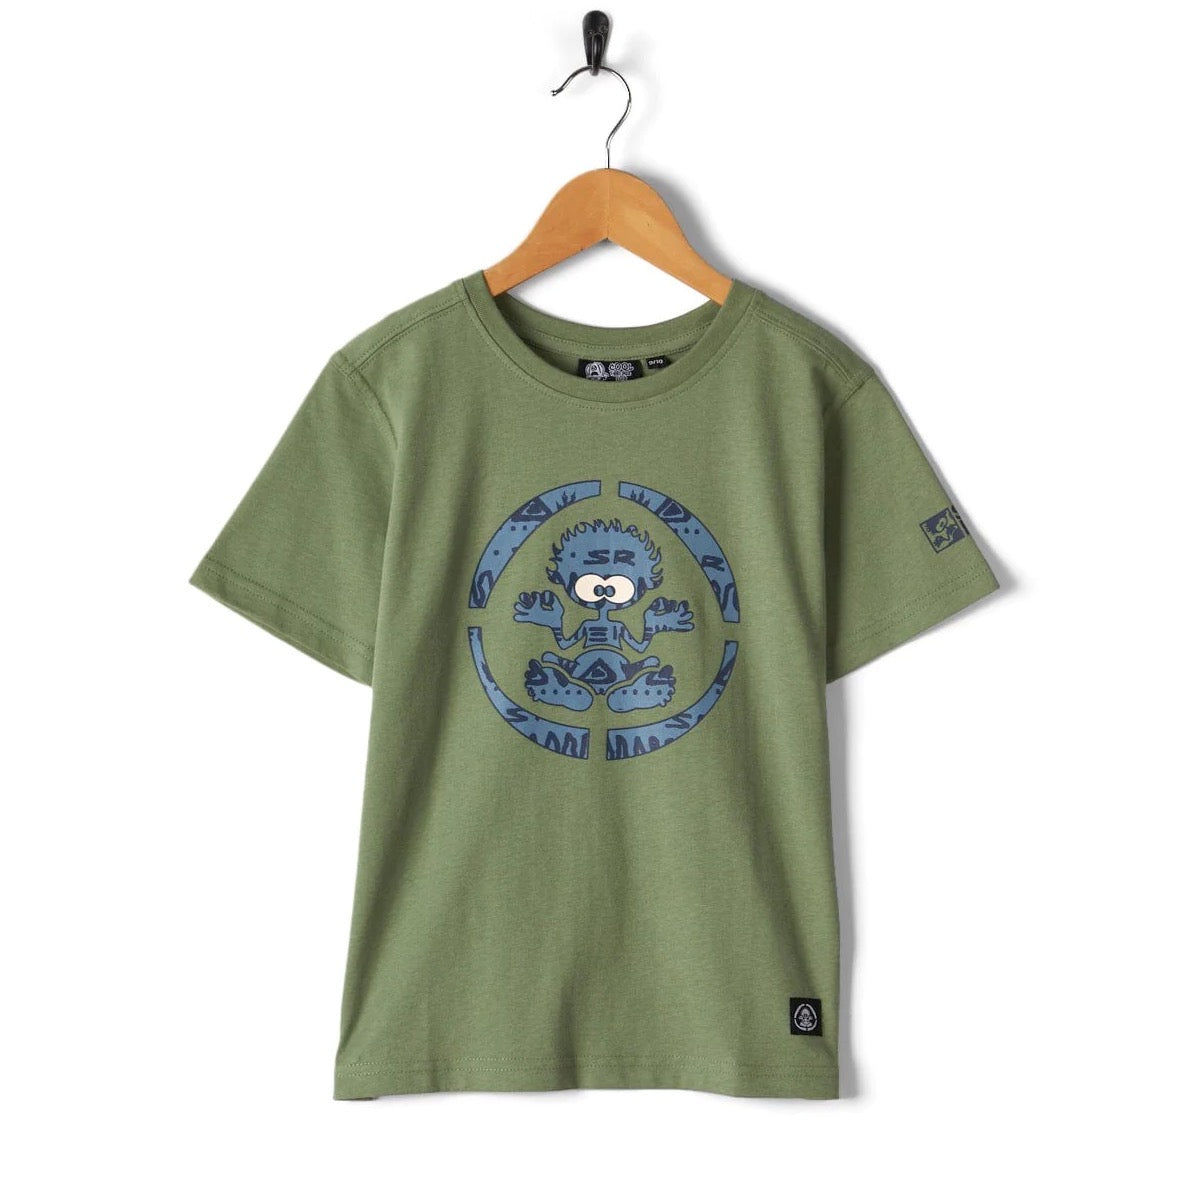 Saltrock Target Marks Kids T-Shirt Green Clothing 7/8YRS / Green,9/10YRS / Green,11/12YRS / Green,13YRS / Green